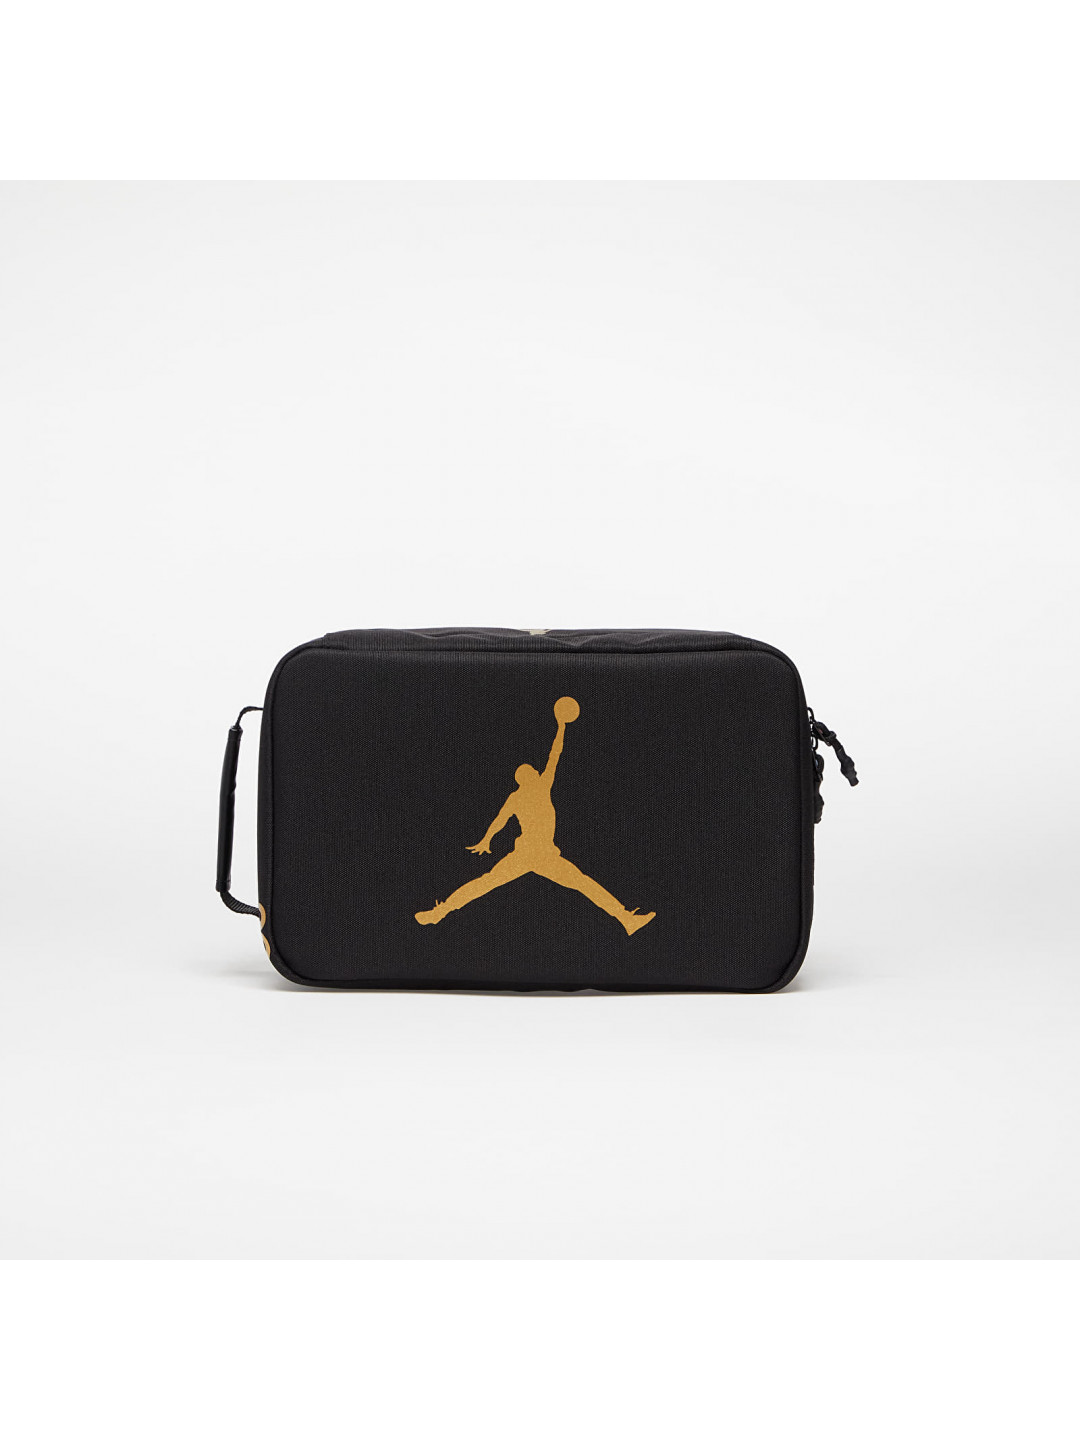 Jordan The Shoe Box Black Gold